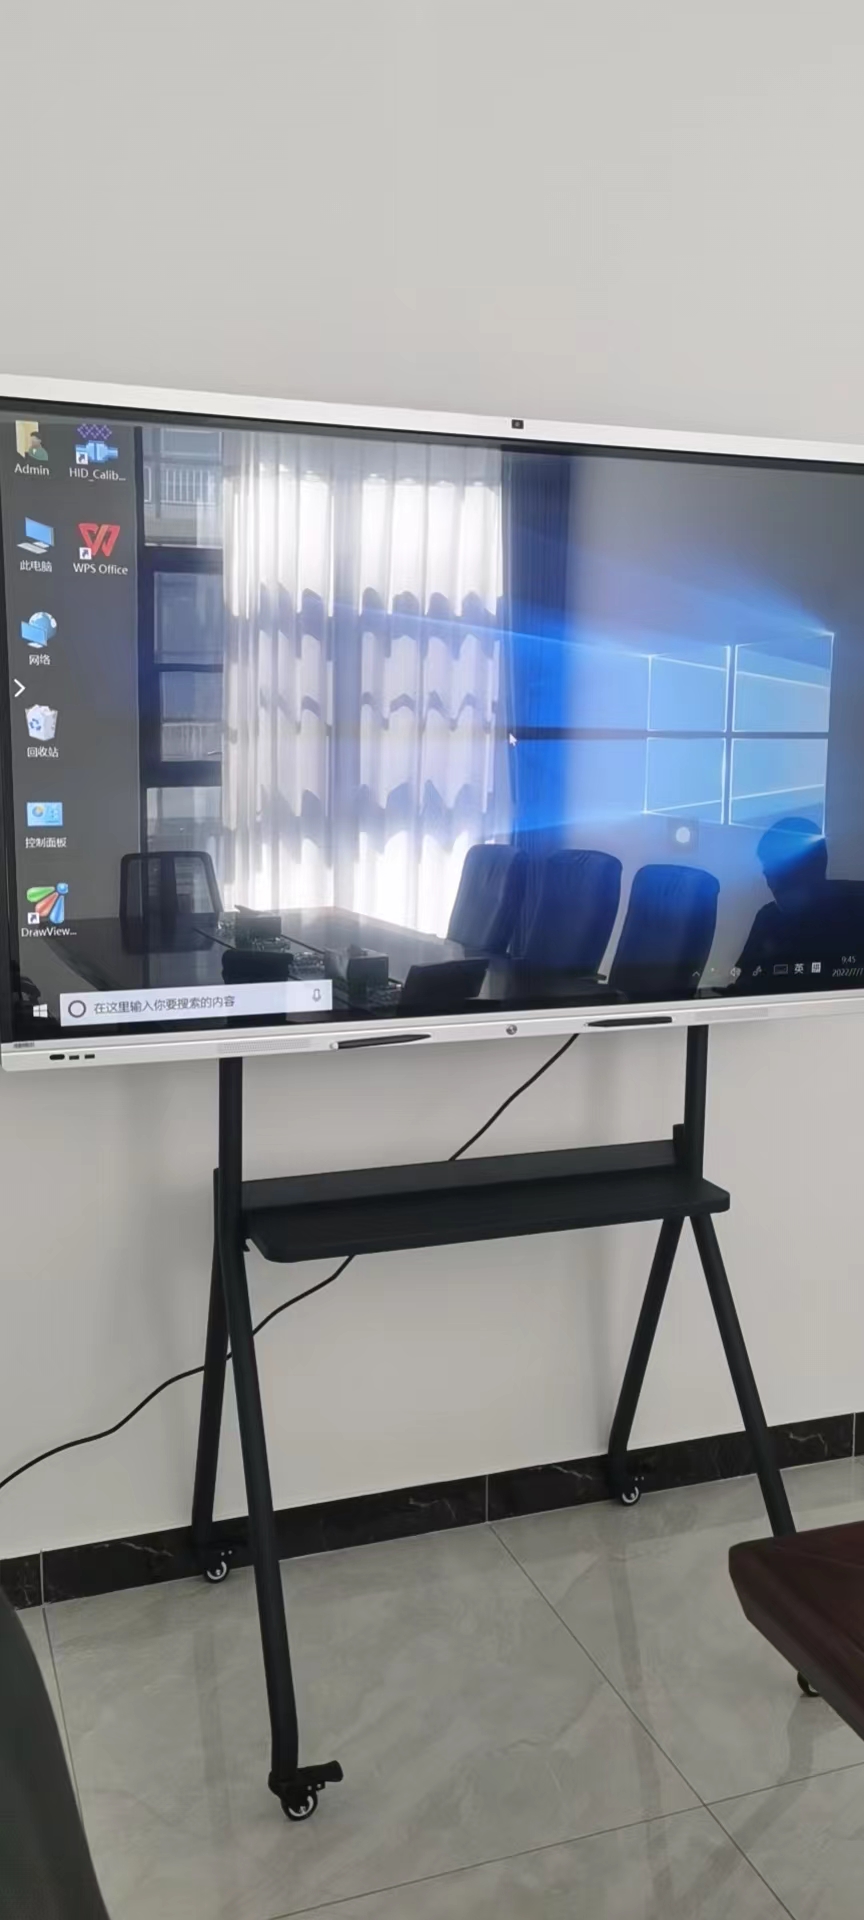 小型会议室视频会议解决方案。